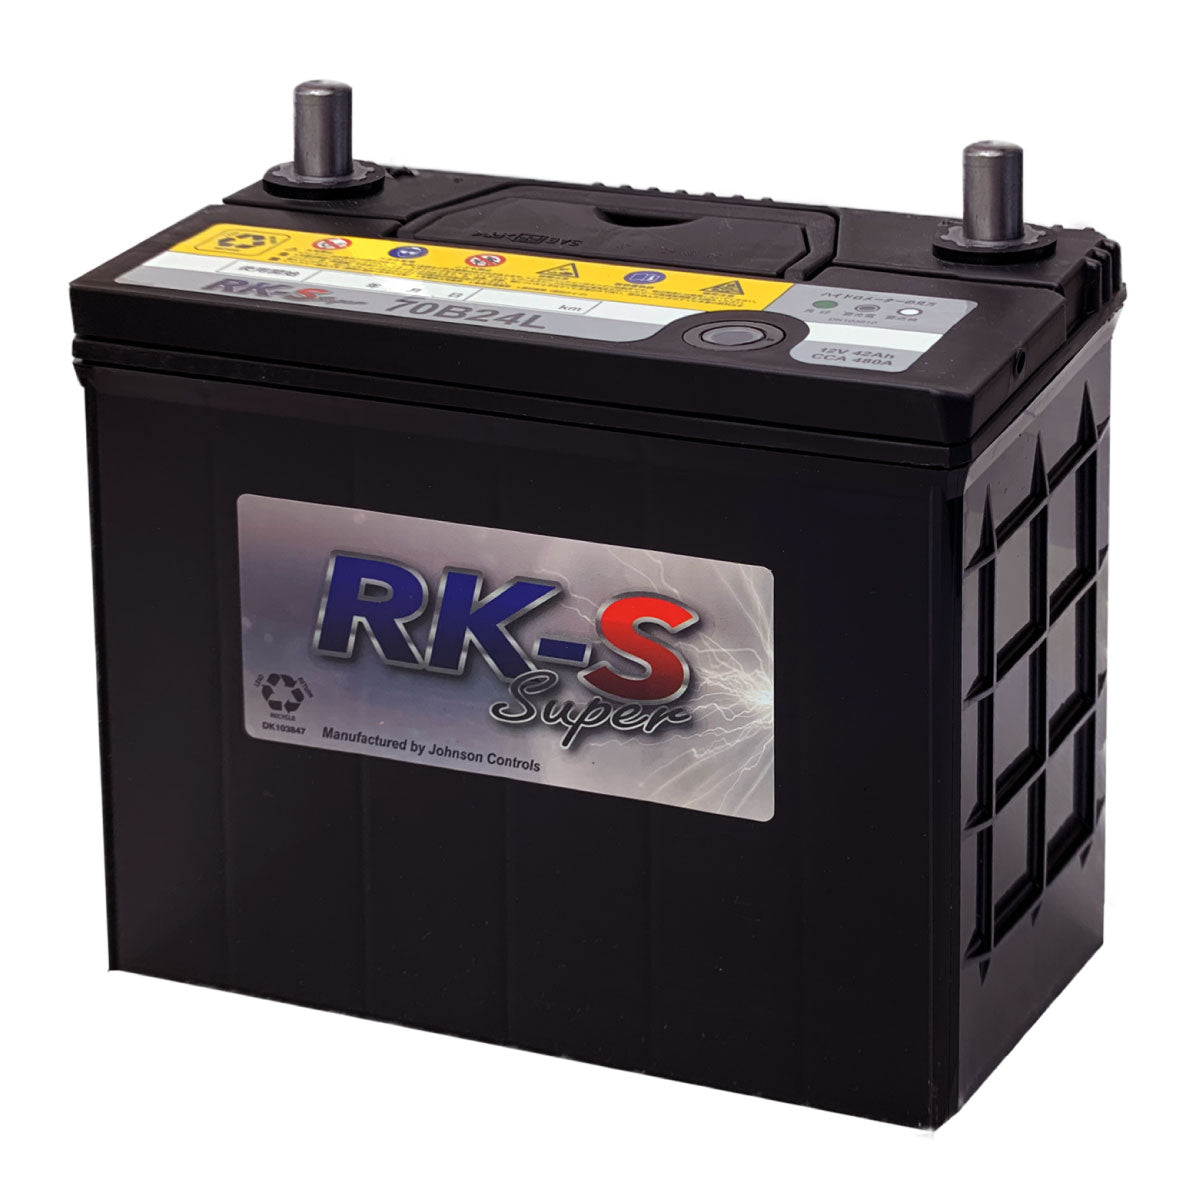 KBL 70B24L RK-SS バッテリー 農機 建機 自動車 KBL RK-S Super 振動対策 状態検知 クラリオス社